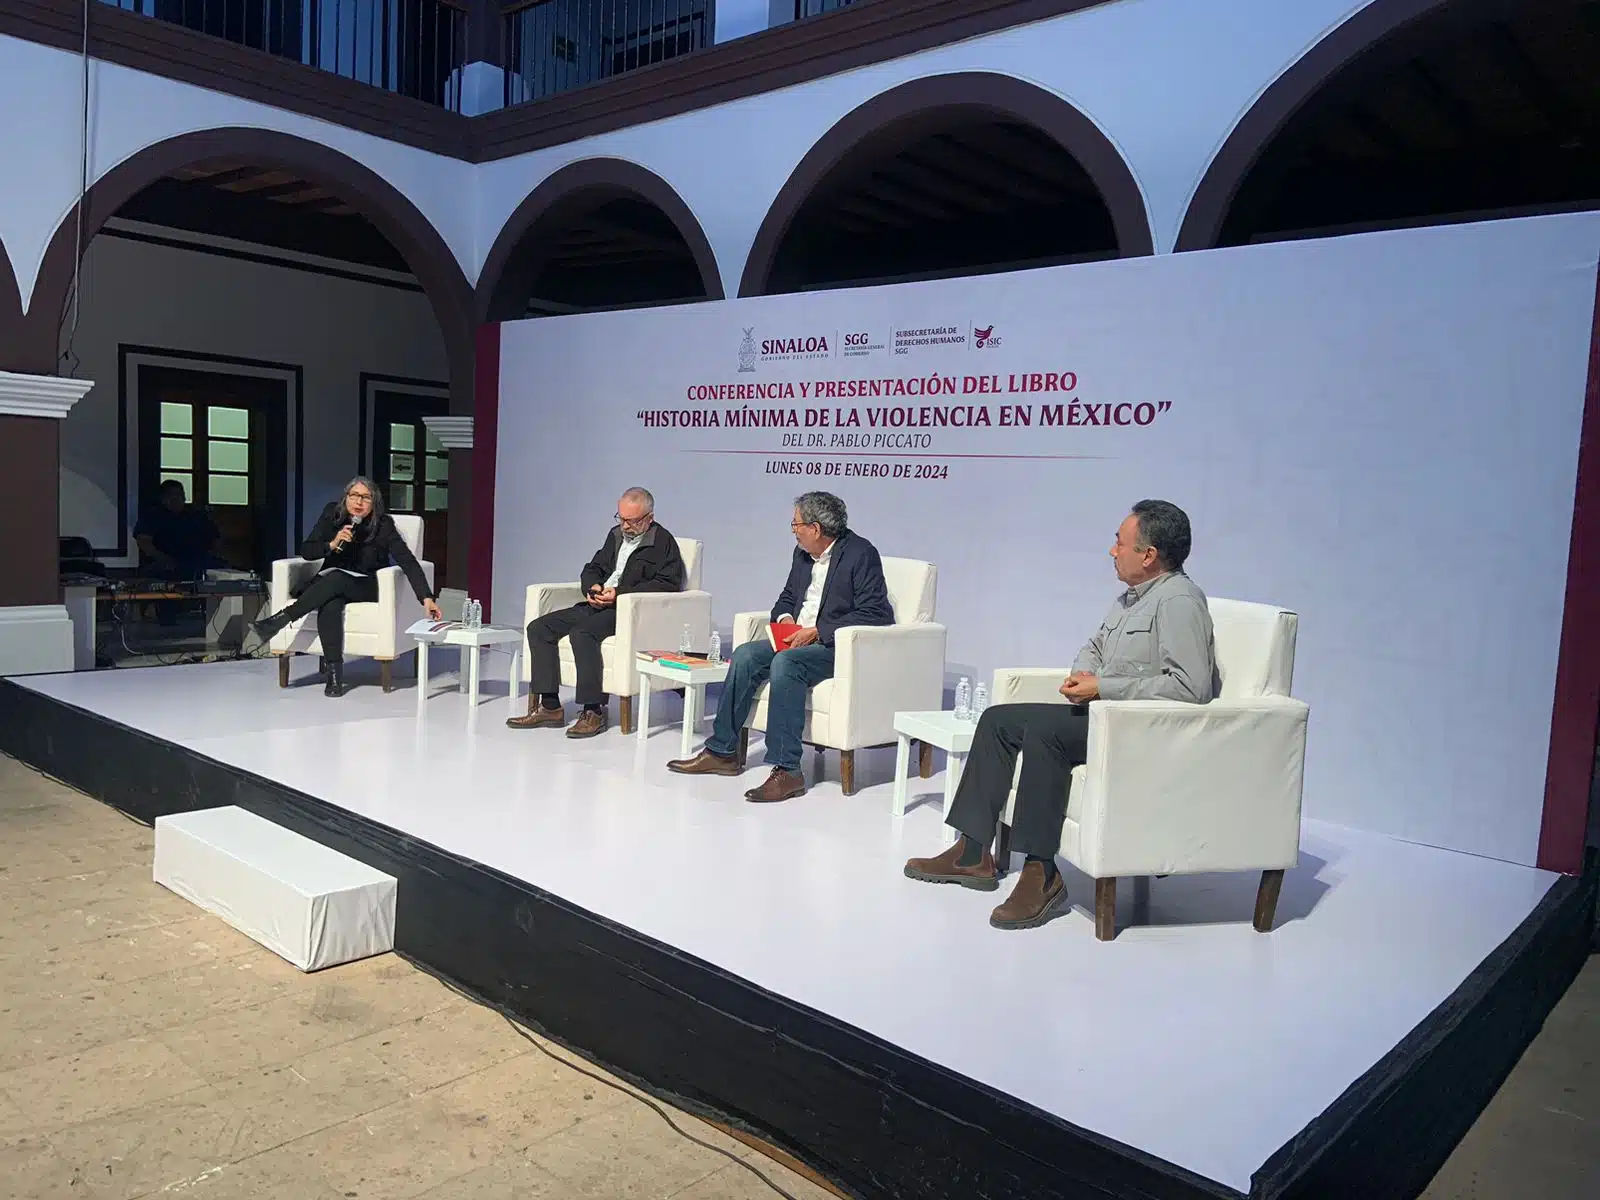 Pablo Piccato en la presentación de su libro “Historia mínima de la violencia en México” en el Centro Centenario de las Artes